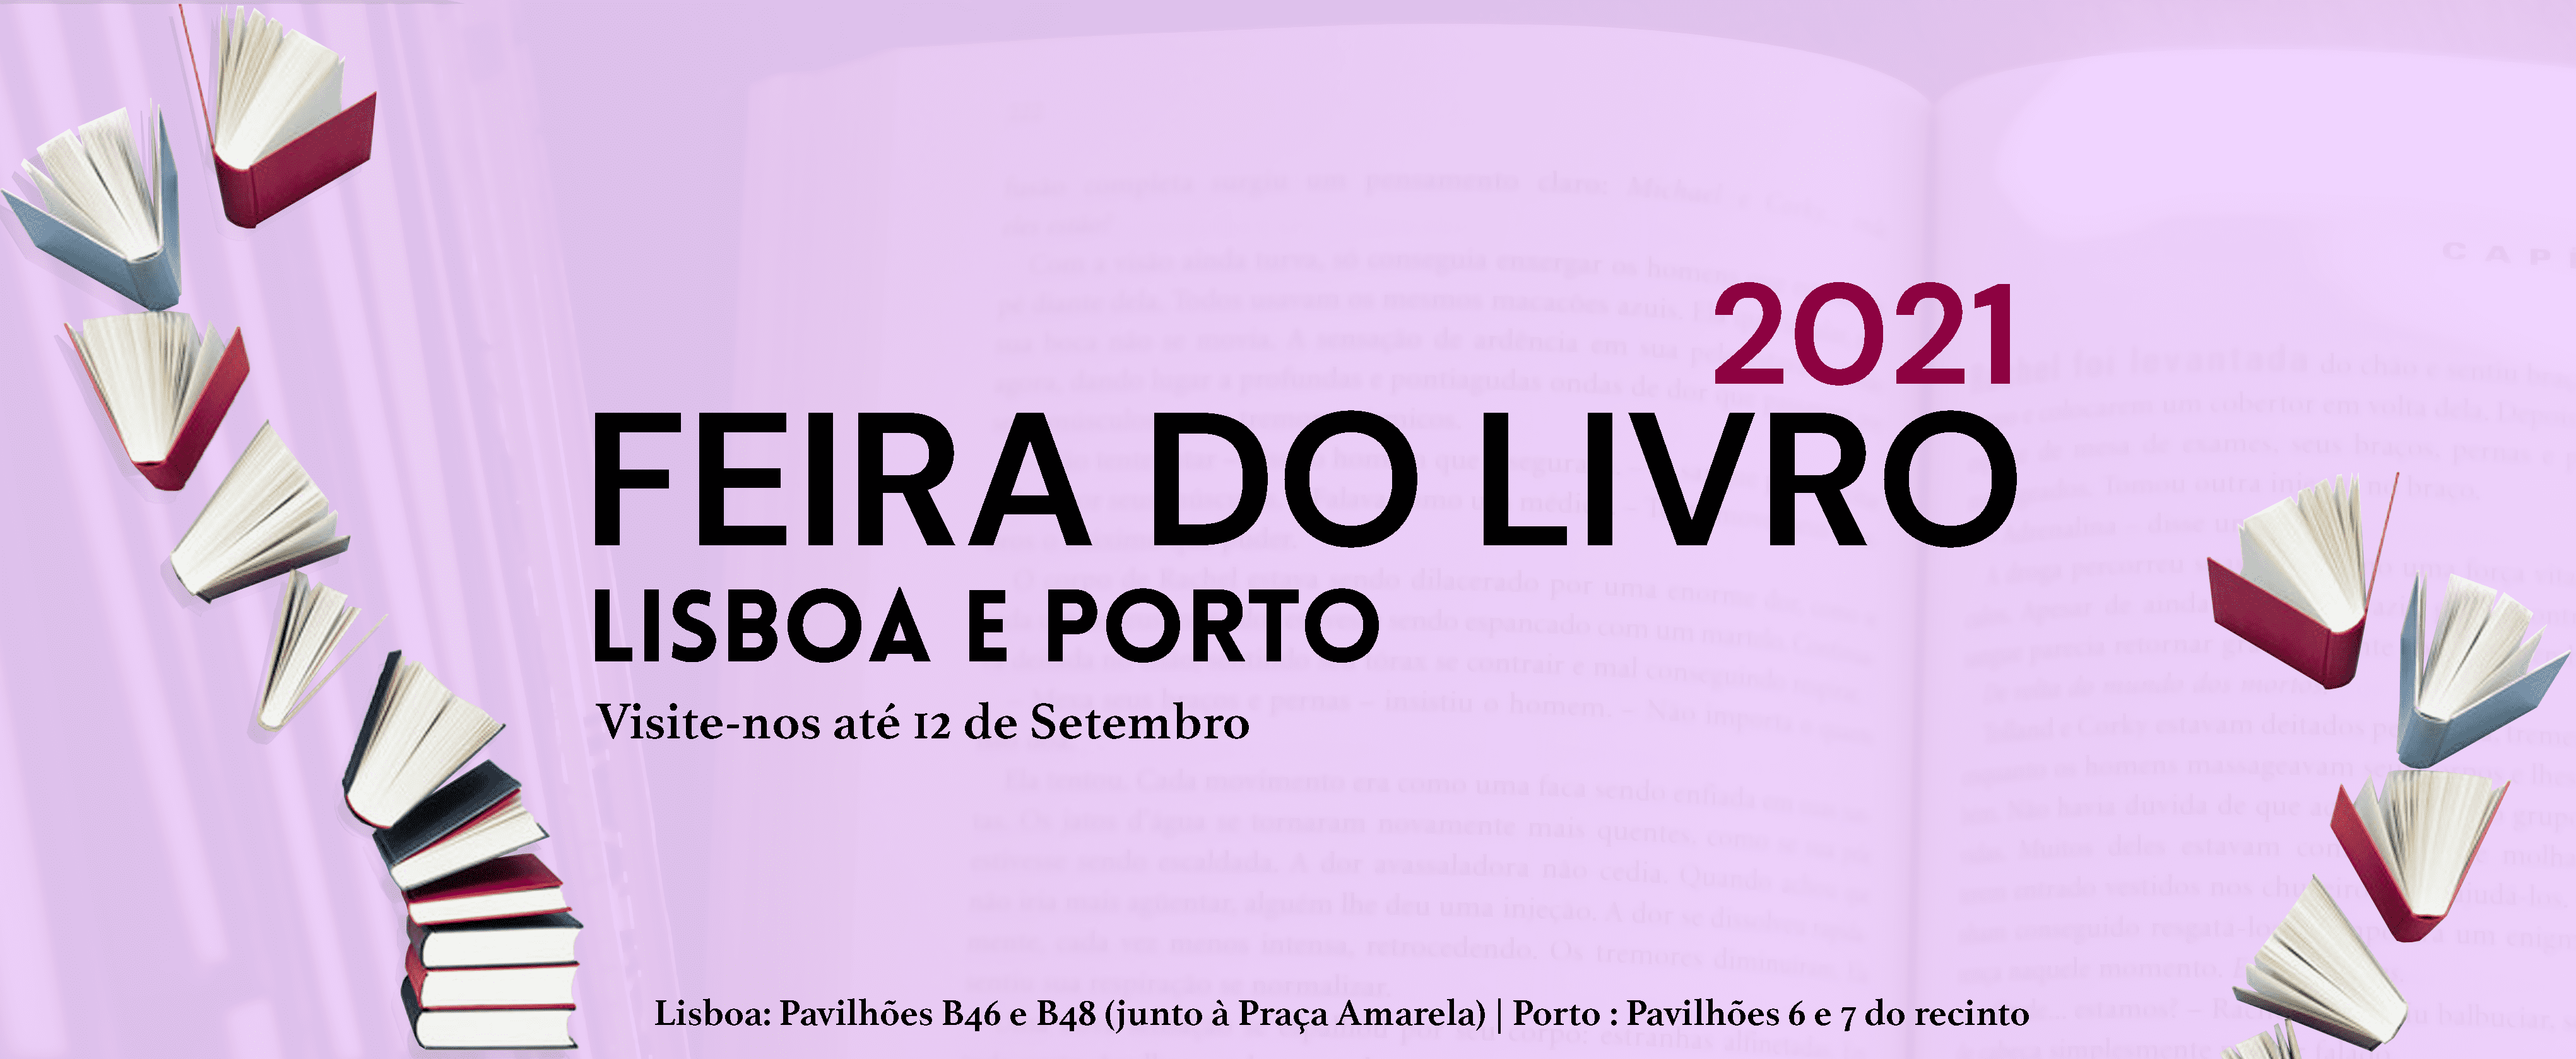 Imprensa Nacional presente nas Feiras do Livro de Lisboa e Porto com muitas novidades e descontos para oferecer